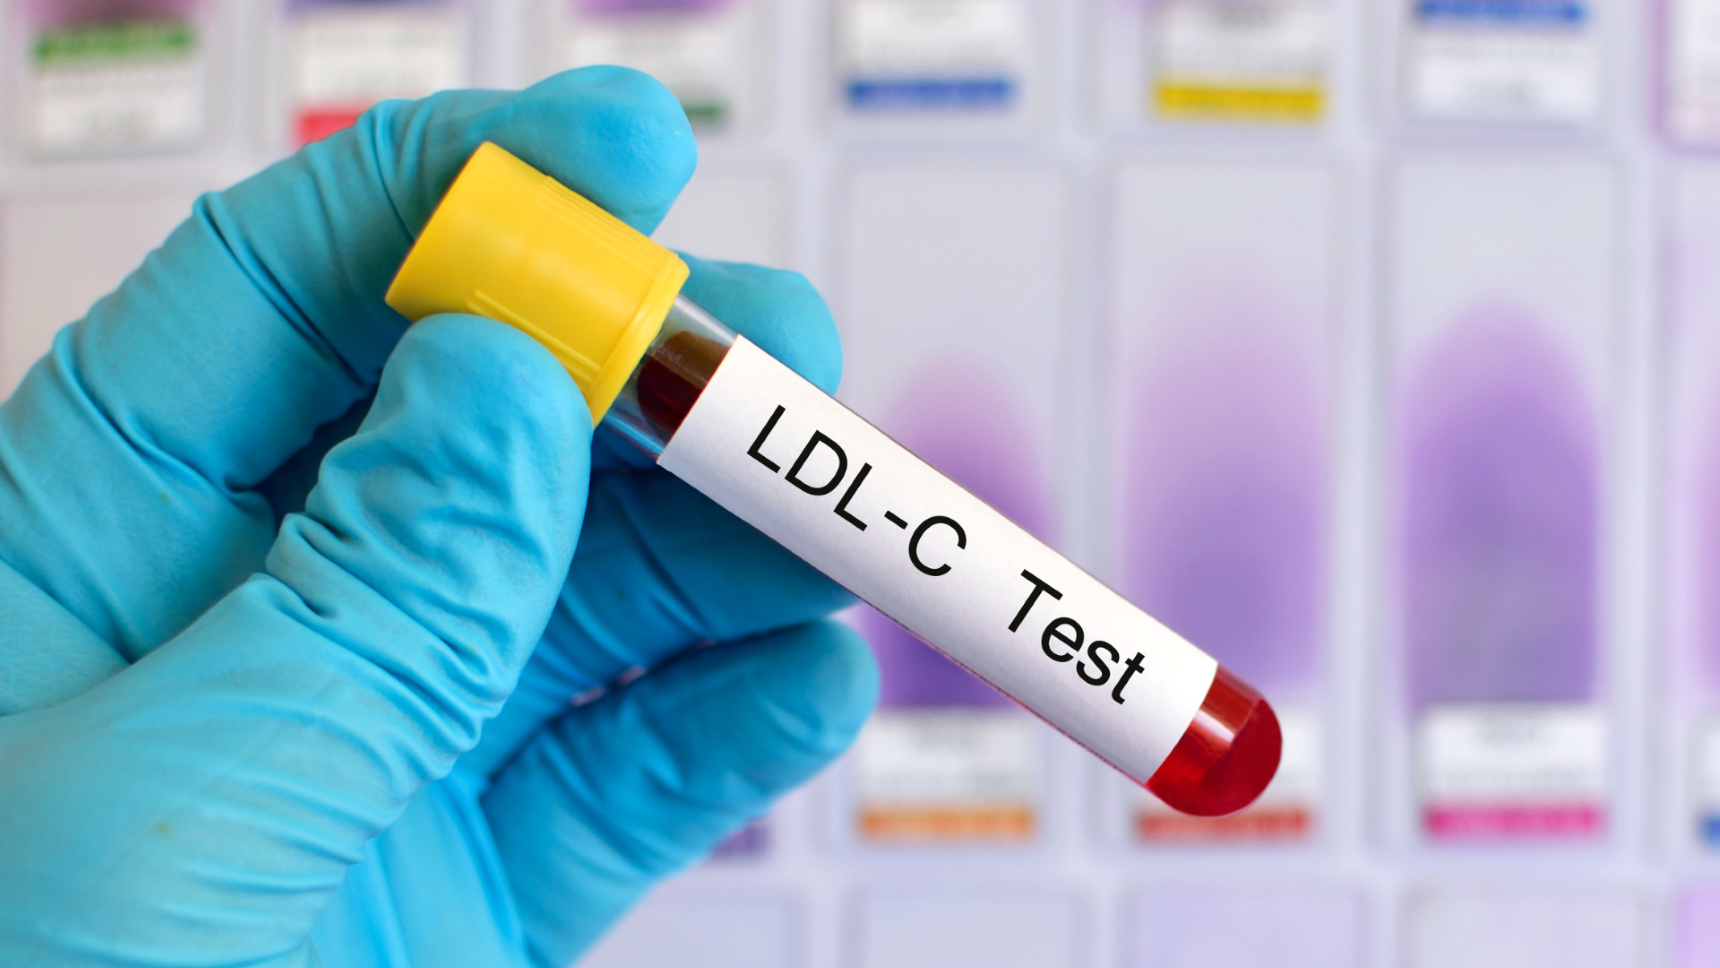 บริการทดสอบประสิทธิภาพการผลิตคอเลสเตอรอล ประเภท LDL ในผลิตภัณฑ์